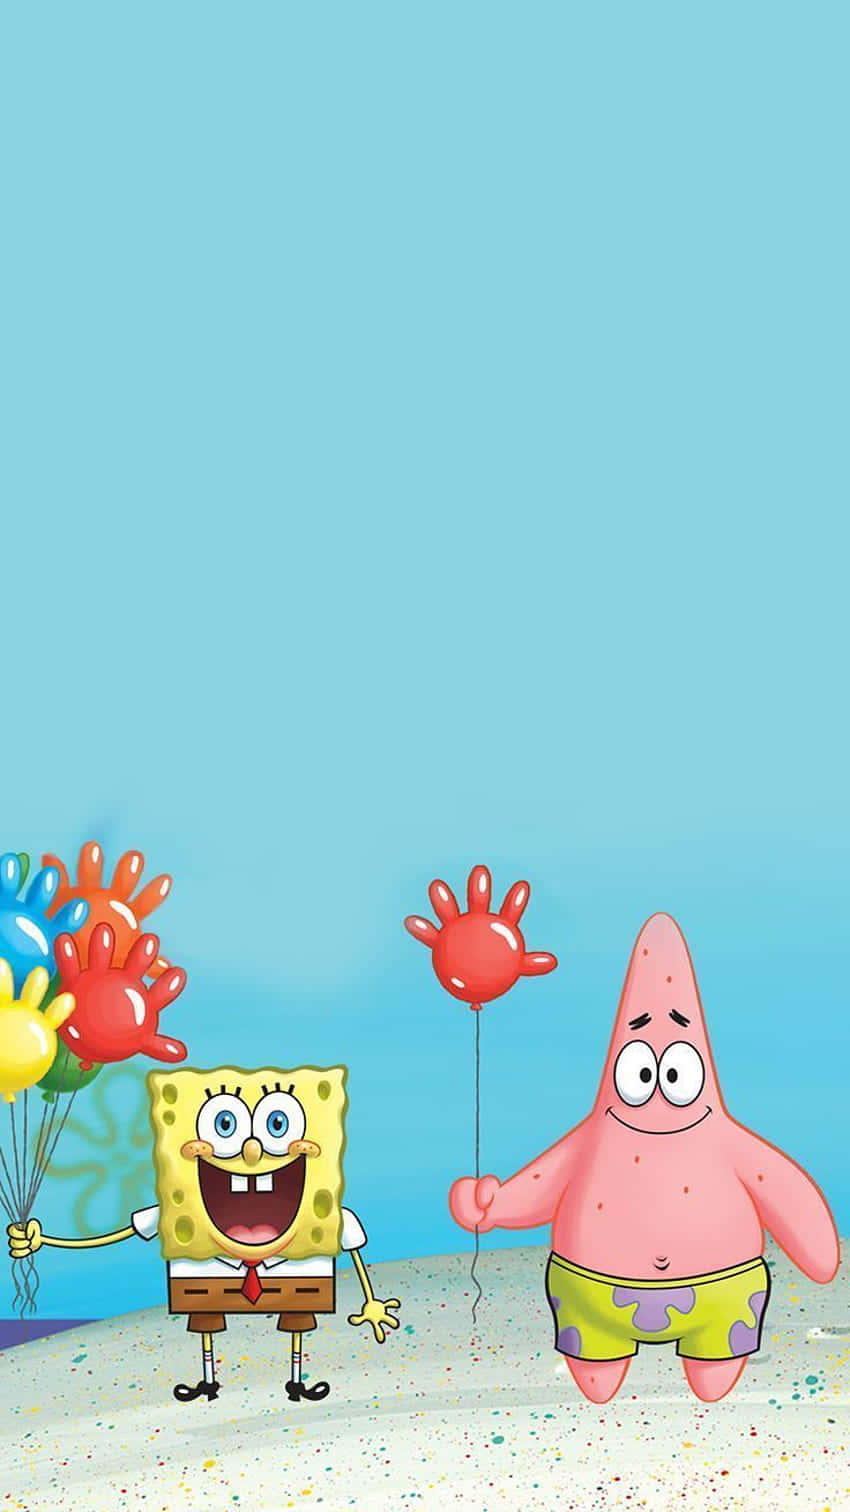 Aesthetic Spongebob's unique style dazzles onlookers